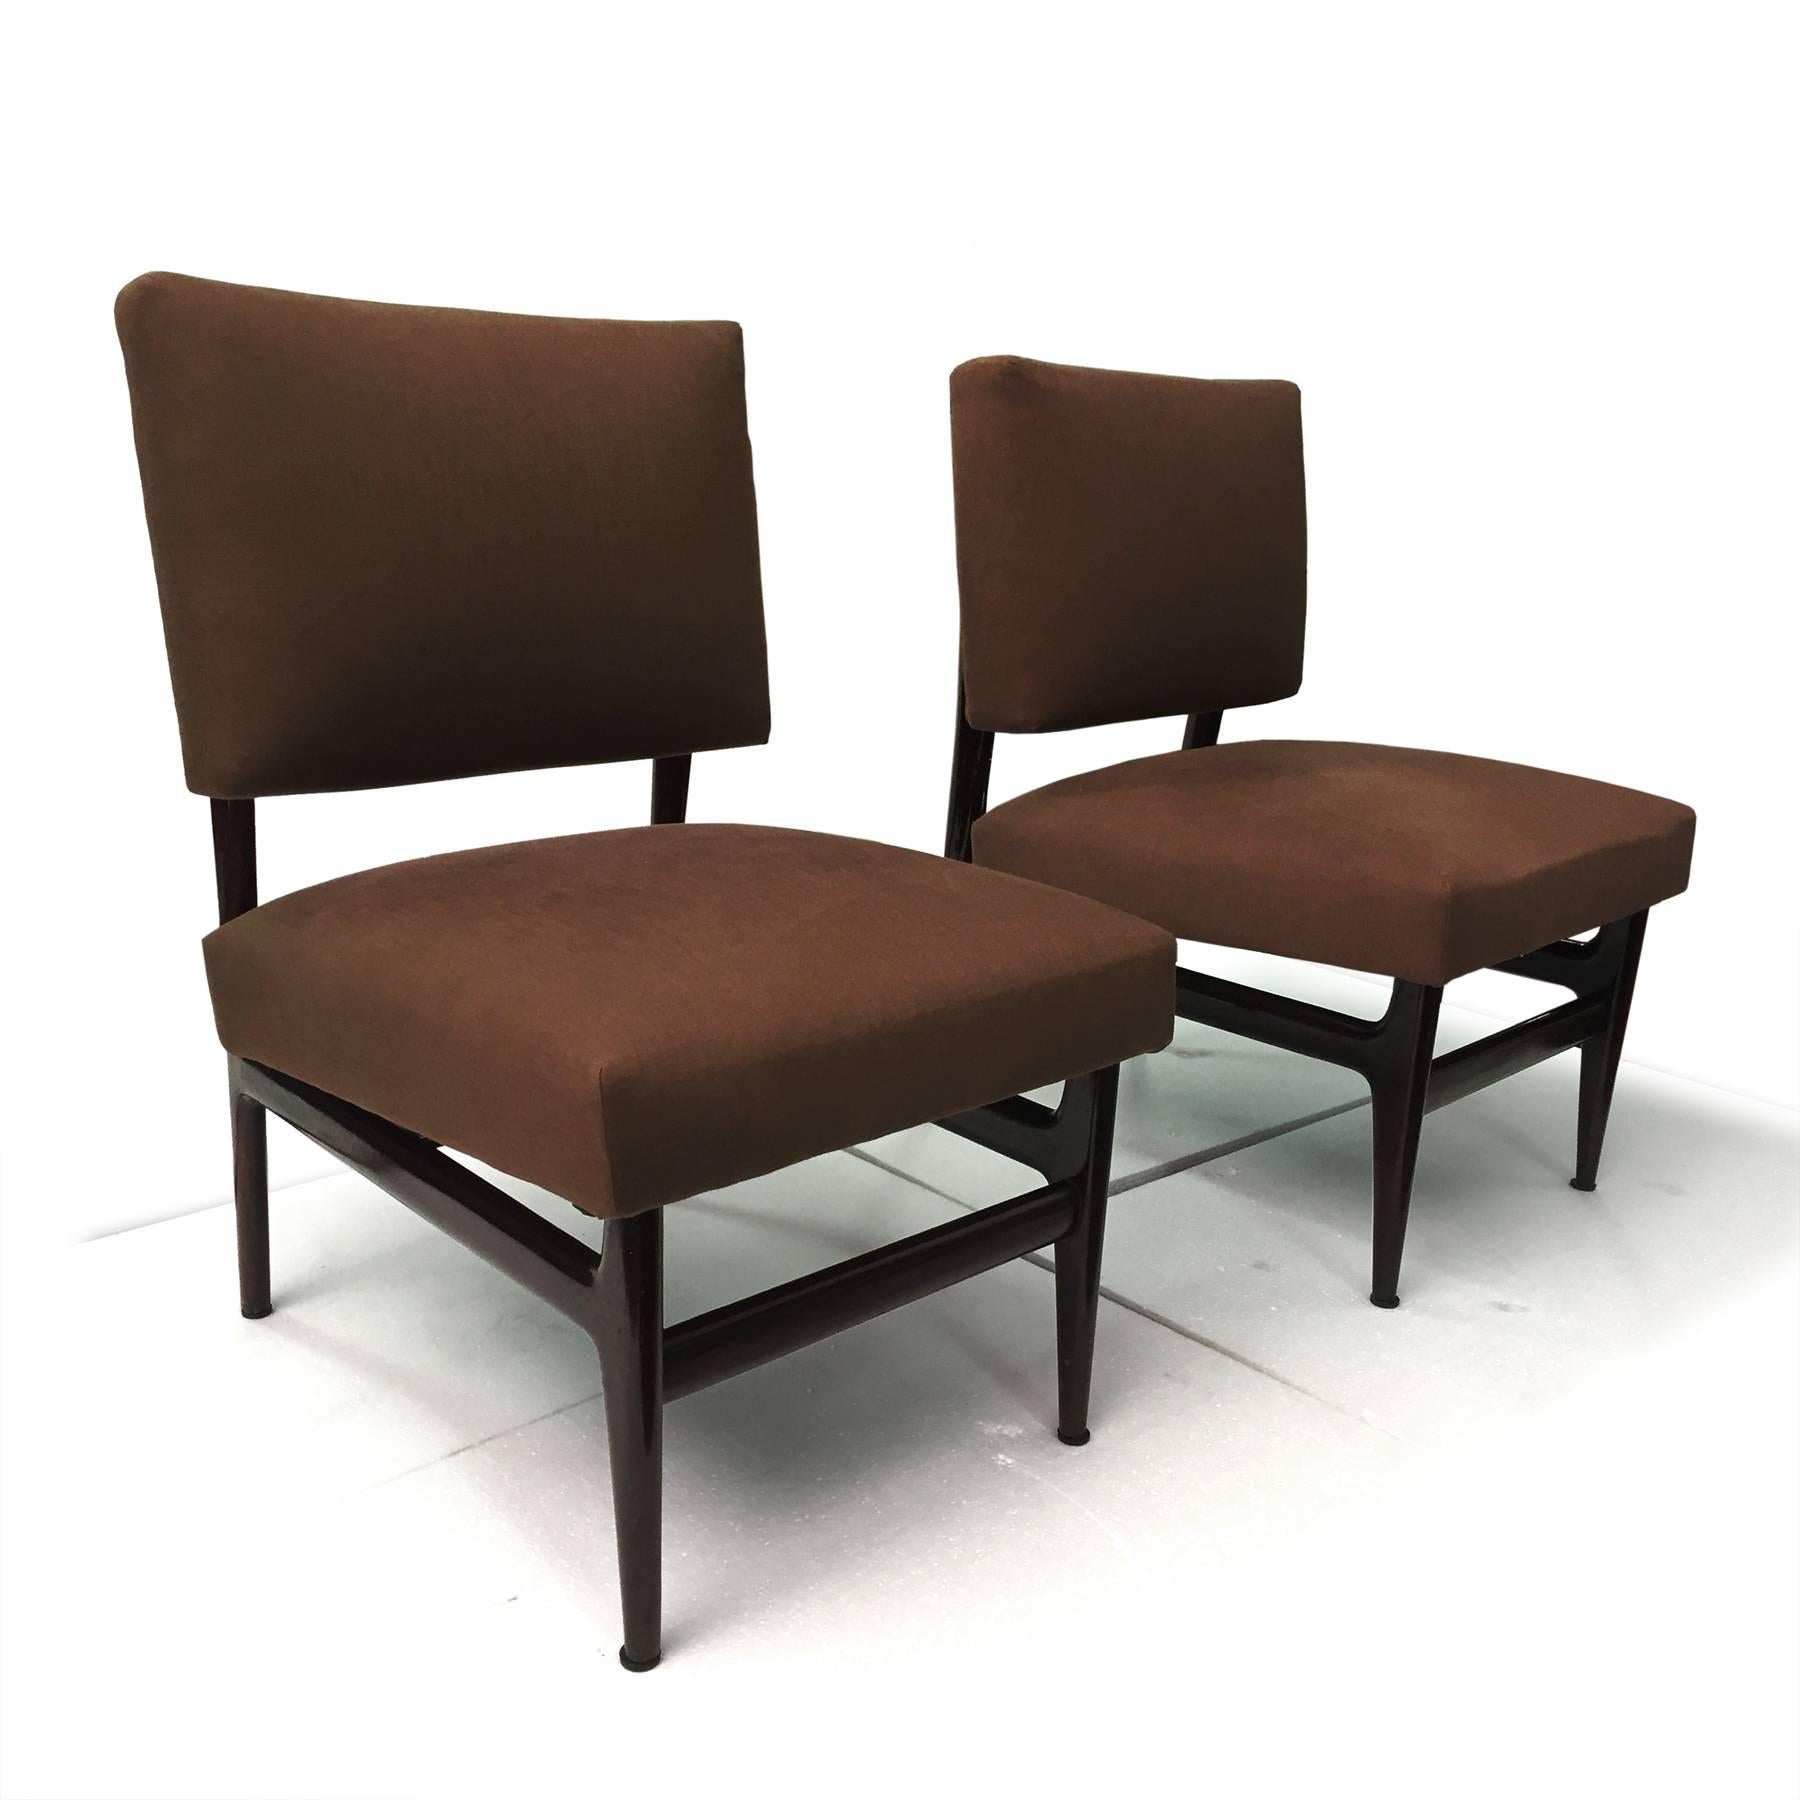 Paire de fauteuils italiens très élégants et confortables, conçus et fabriqués par Vittorio Dassi dans les années 1950.
Les sièges sont recouverts d'un tissu en coton brun, en excellent état pour l'époque, sans dommages ni déchirures du tissu, de